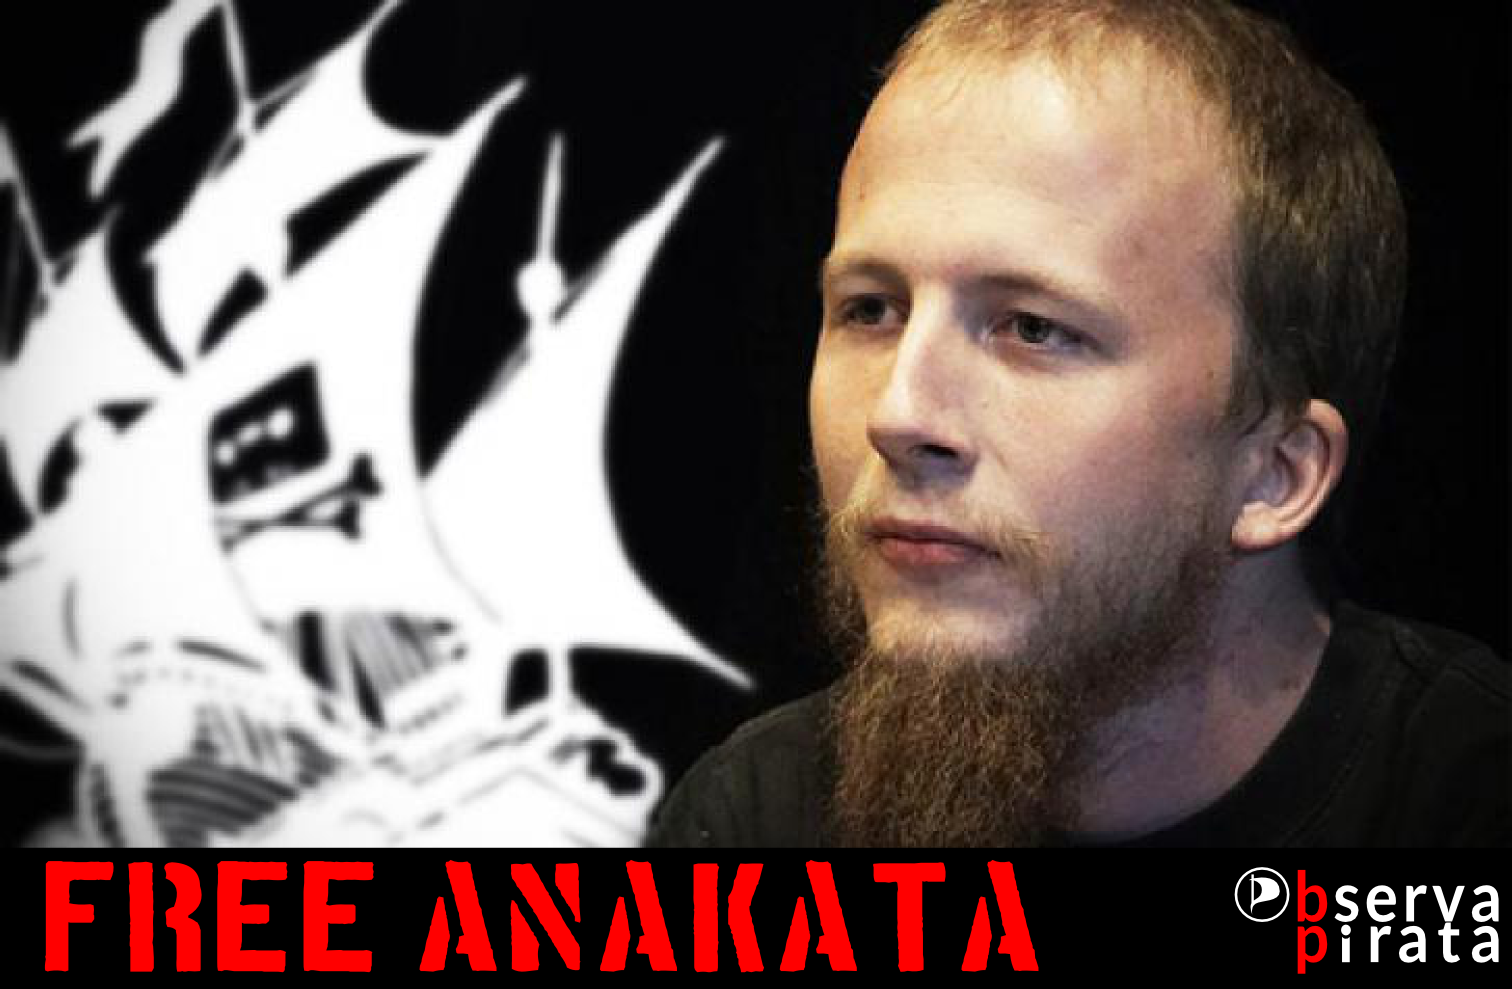 Co-fundador do The Pirate Bay, anakata finalmente é libertado #FreeAnakata